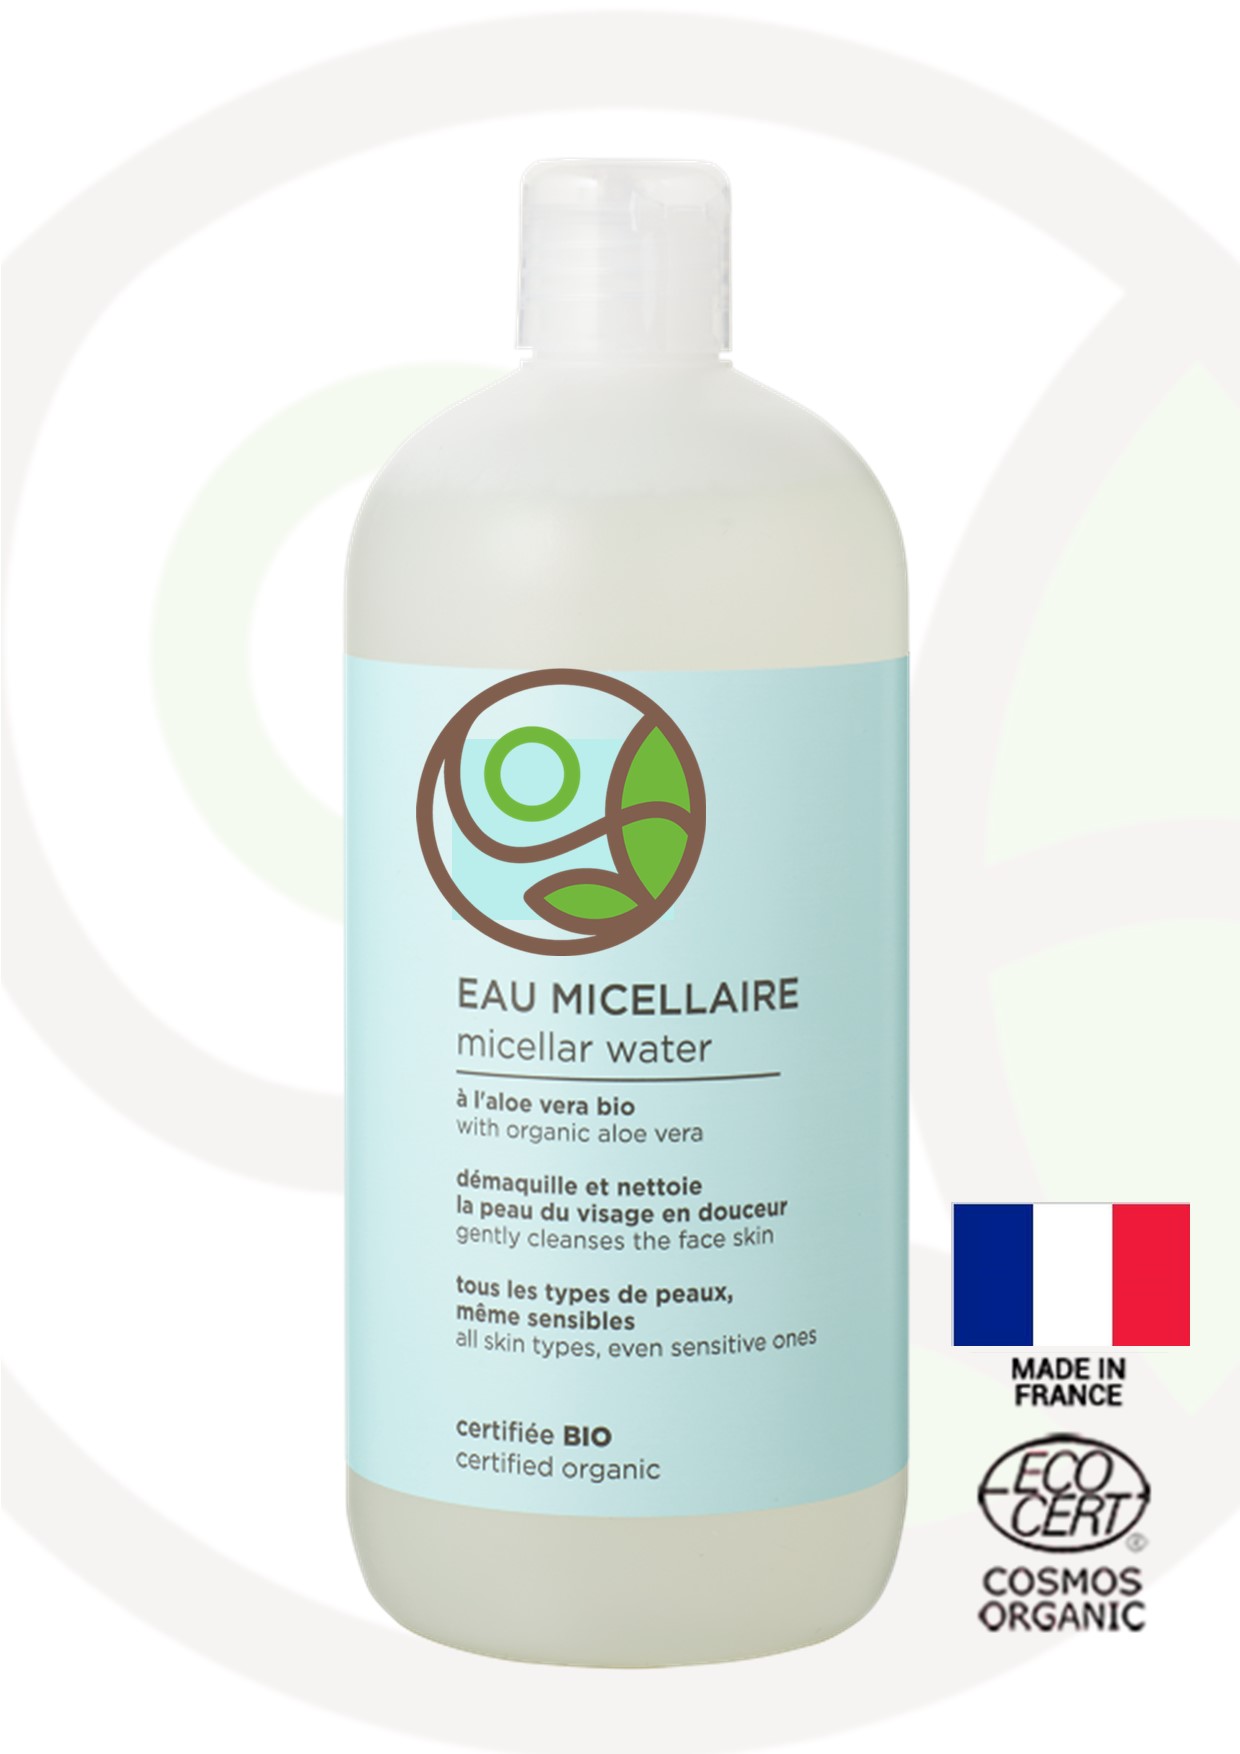 Featured image for “Acqua micellare 500ml - Certificata Bio”